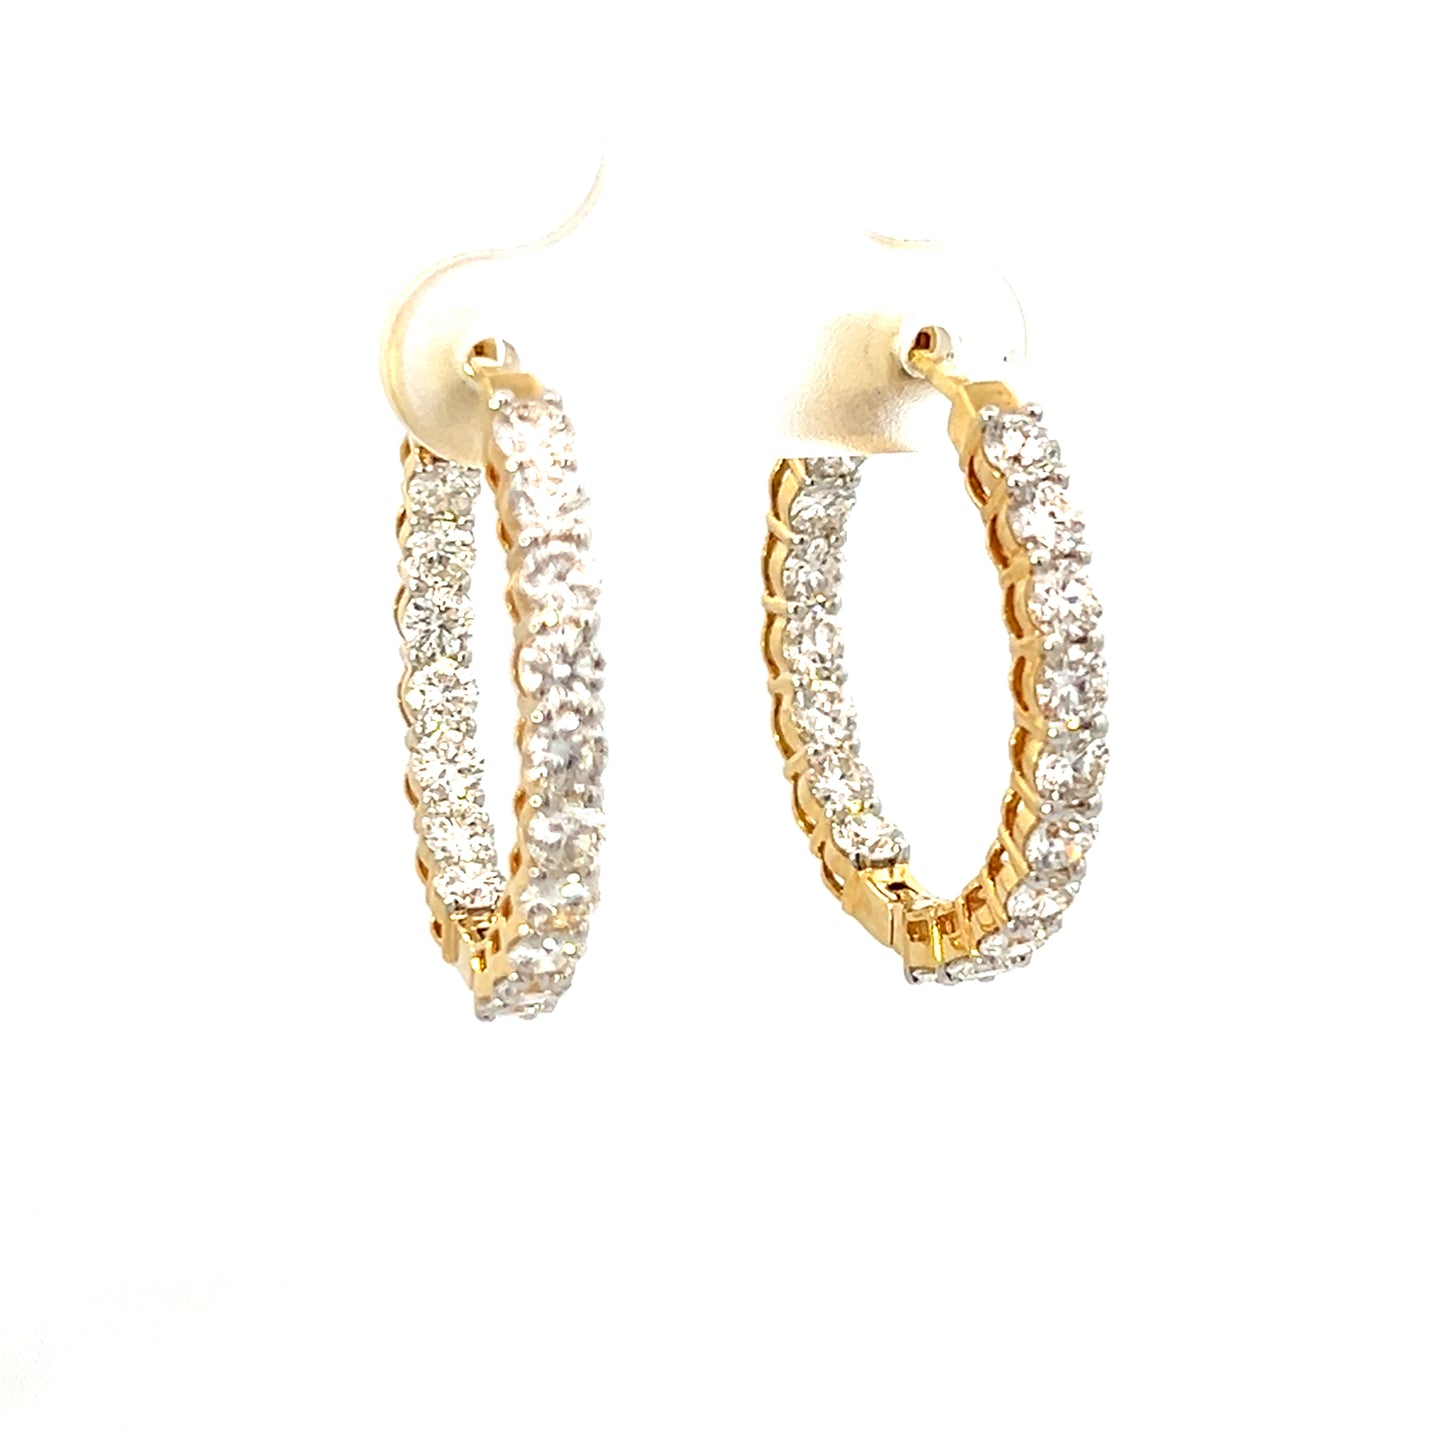 2.31cttw Gold Diamond Hoop Earrings | Small Hoop Earrings With Diamonds | 25mm Gold Hoop Earrings | Gold Hoop Earrings With Diamonds